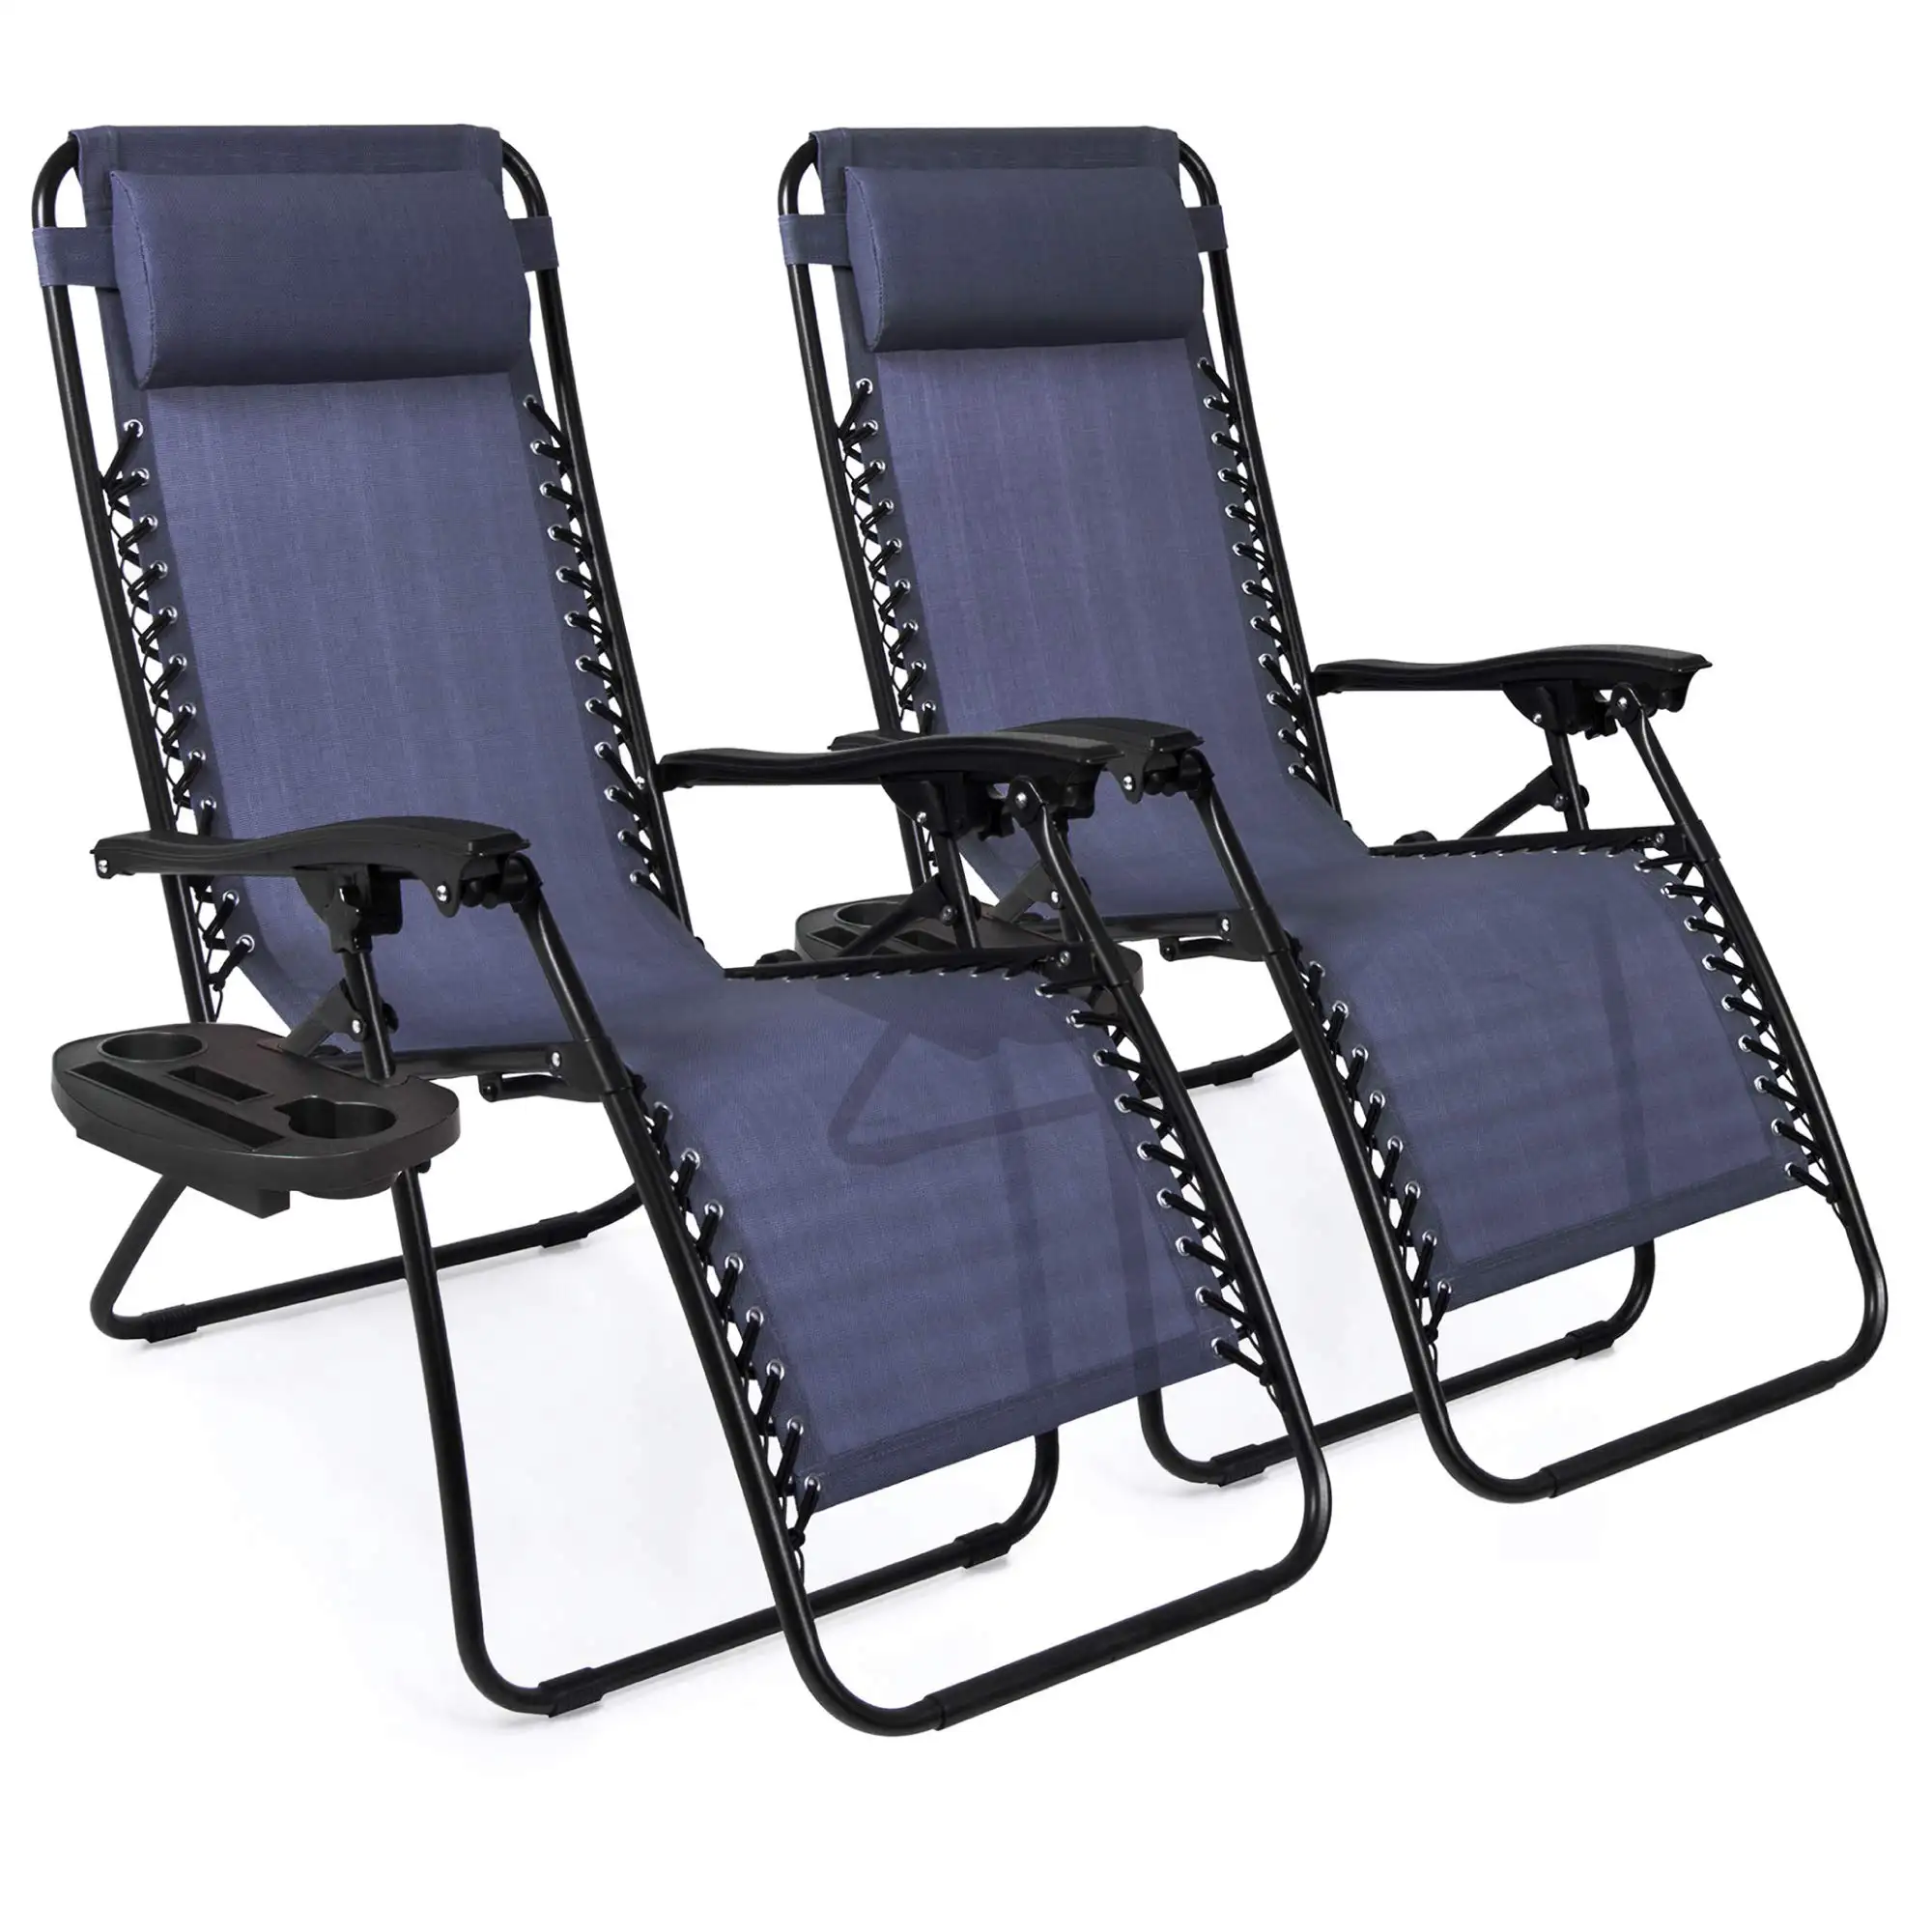 Alüminyum katlanır kamp plaj Recliner salonu sıfır yerçekimi sandalye büyük boy açık katlama hafif bahçe uzanmış sandalyeler